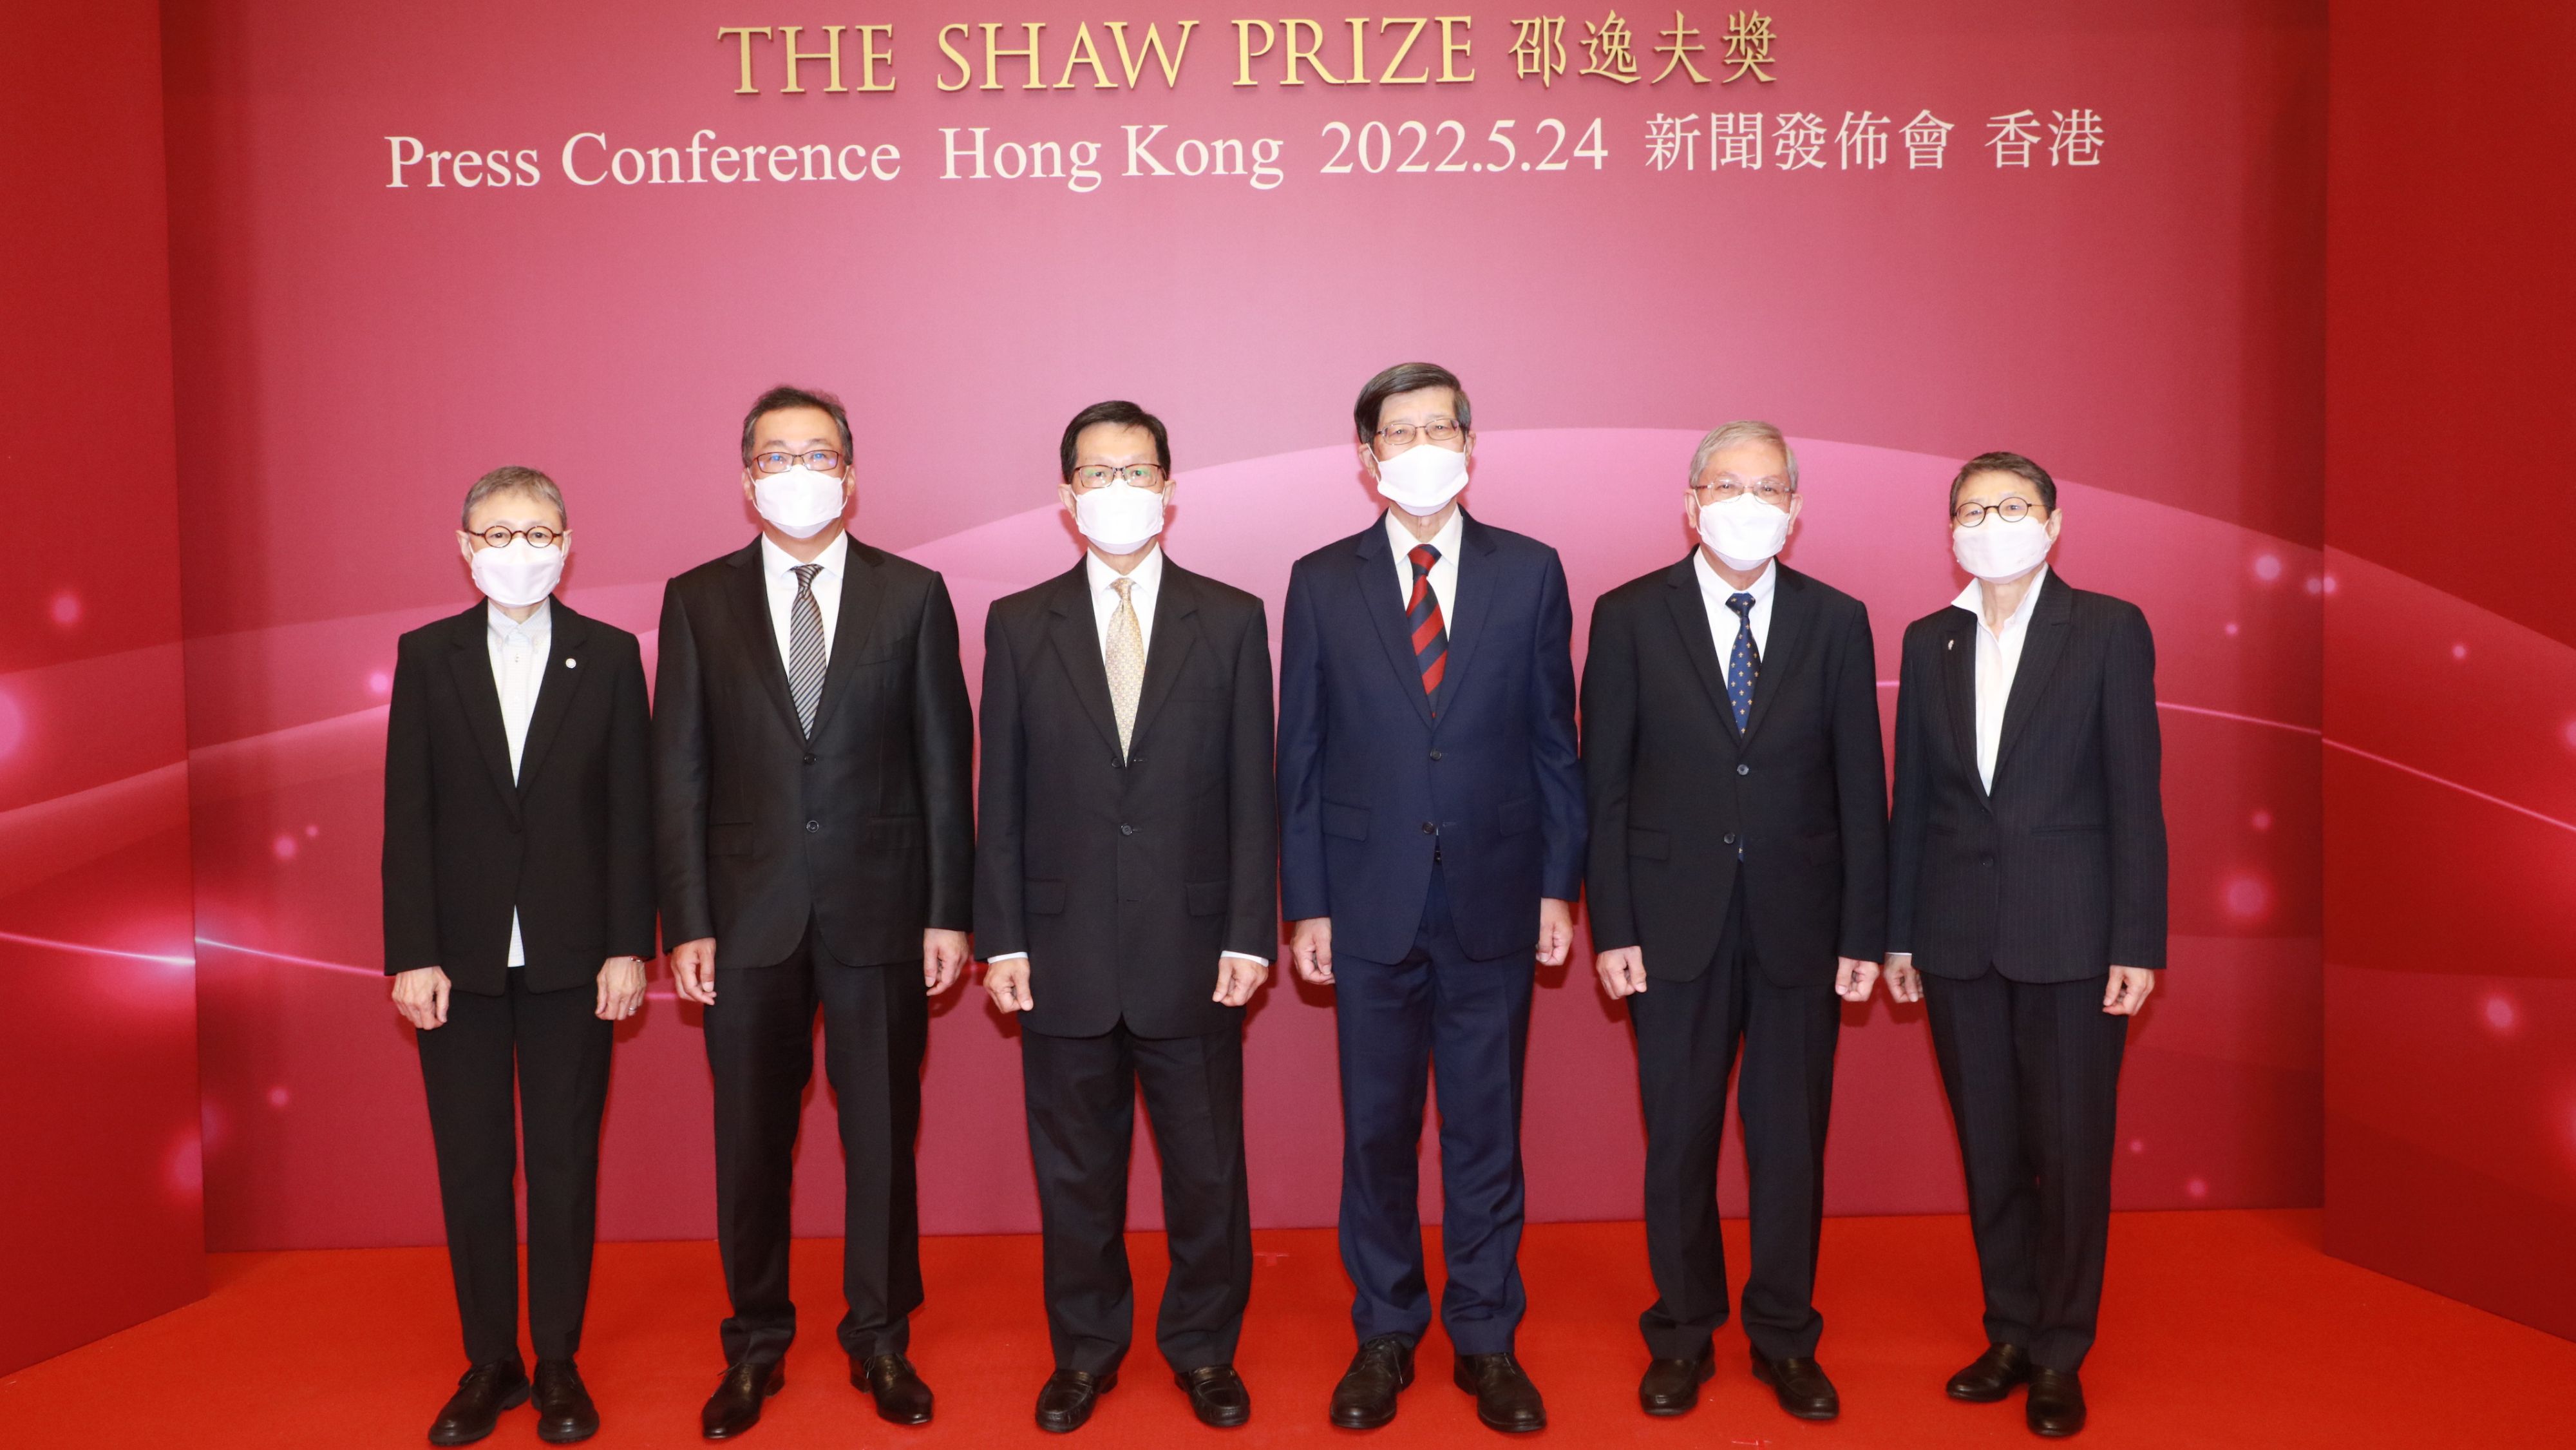 2022年度「邵逸夫獎」得獎者名單公布 六位科學家獲頒獎項